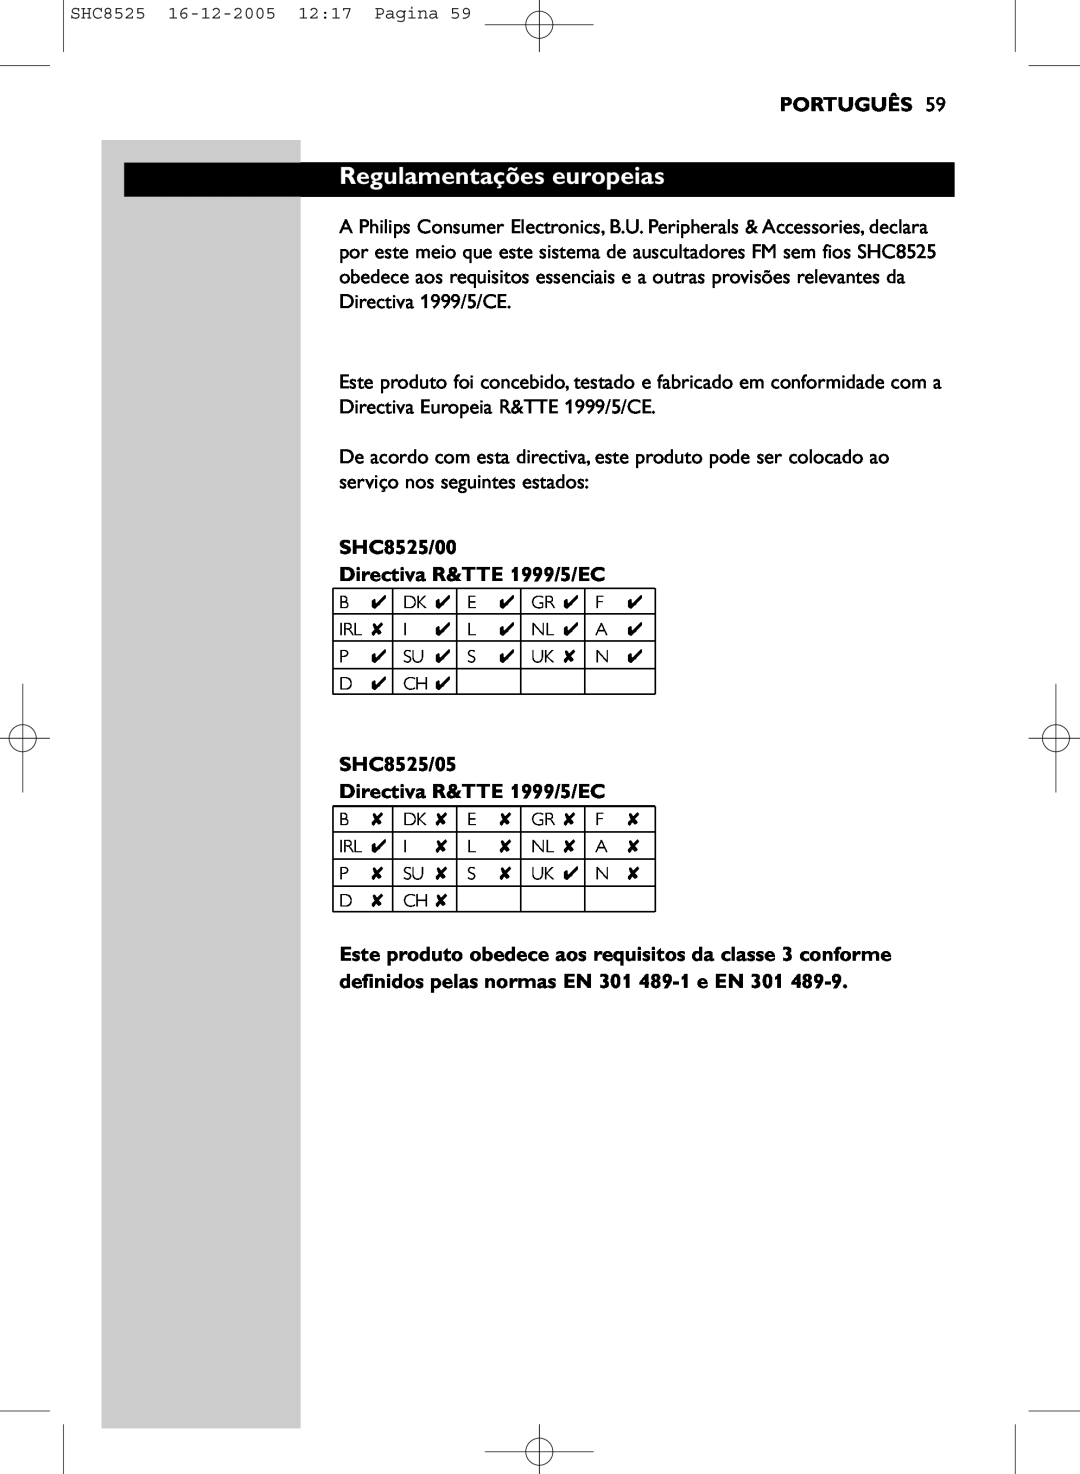 Event electronic manual Regulamentações europeias, Português, SHC8525/00 Directiva R&TTE 1999/5/EC 